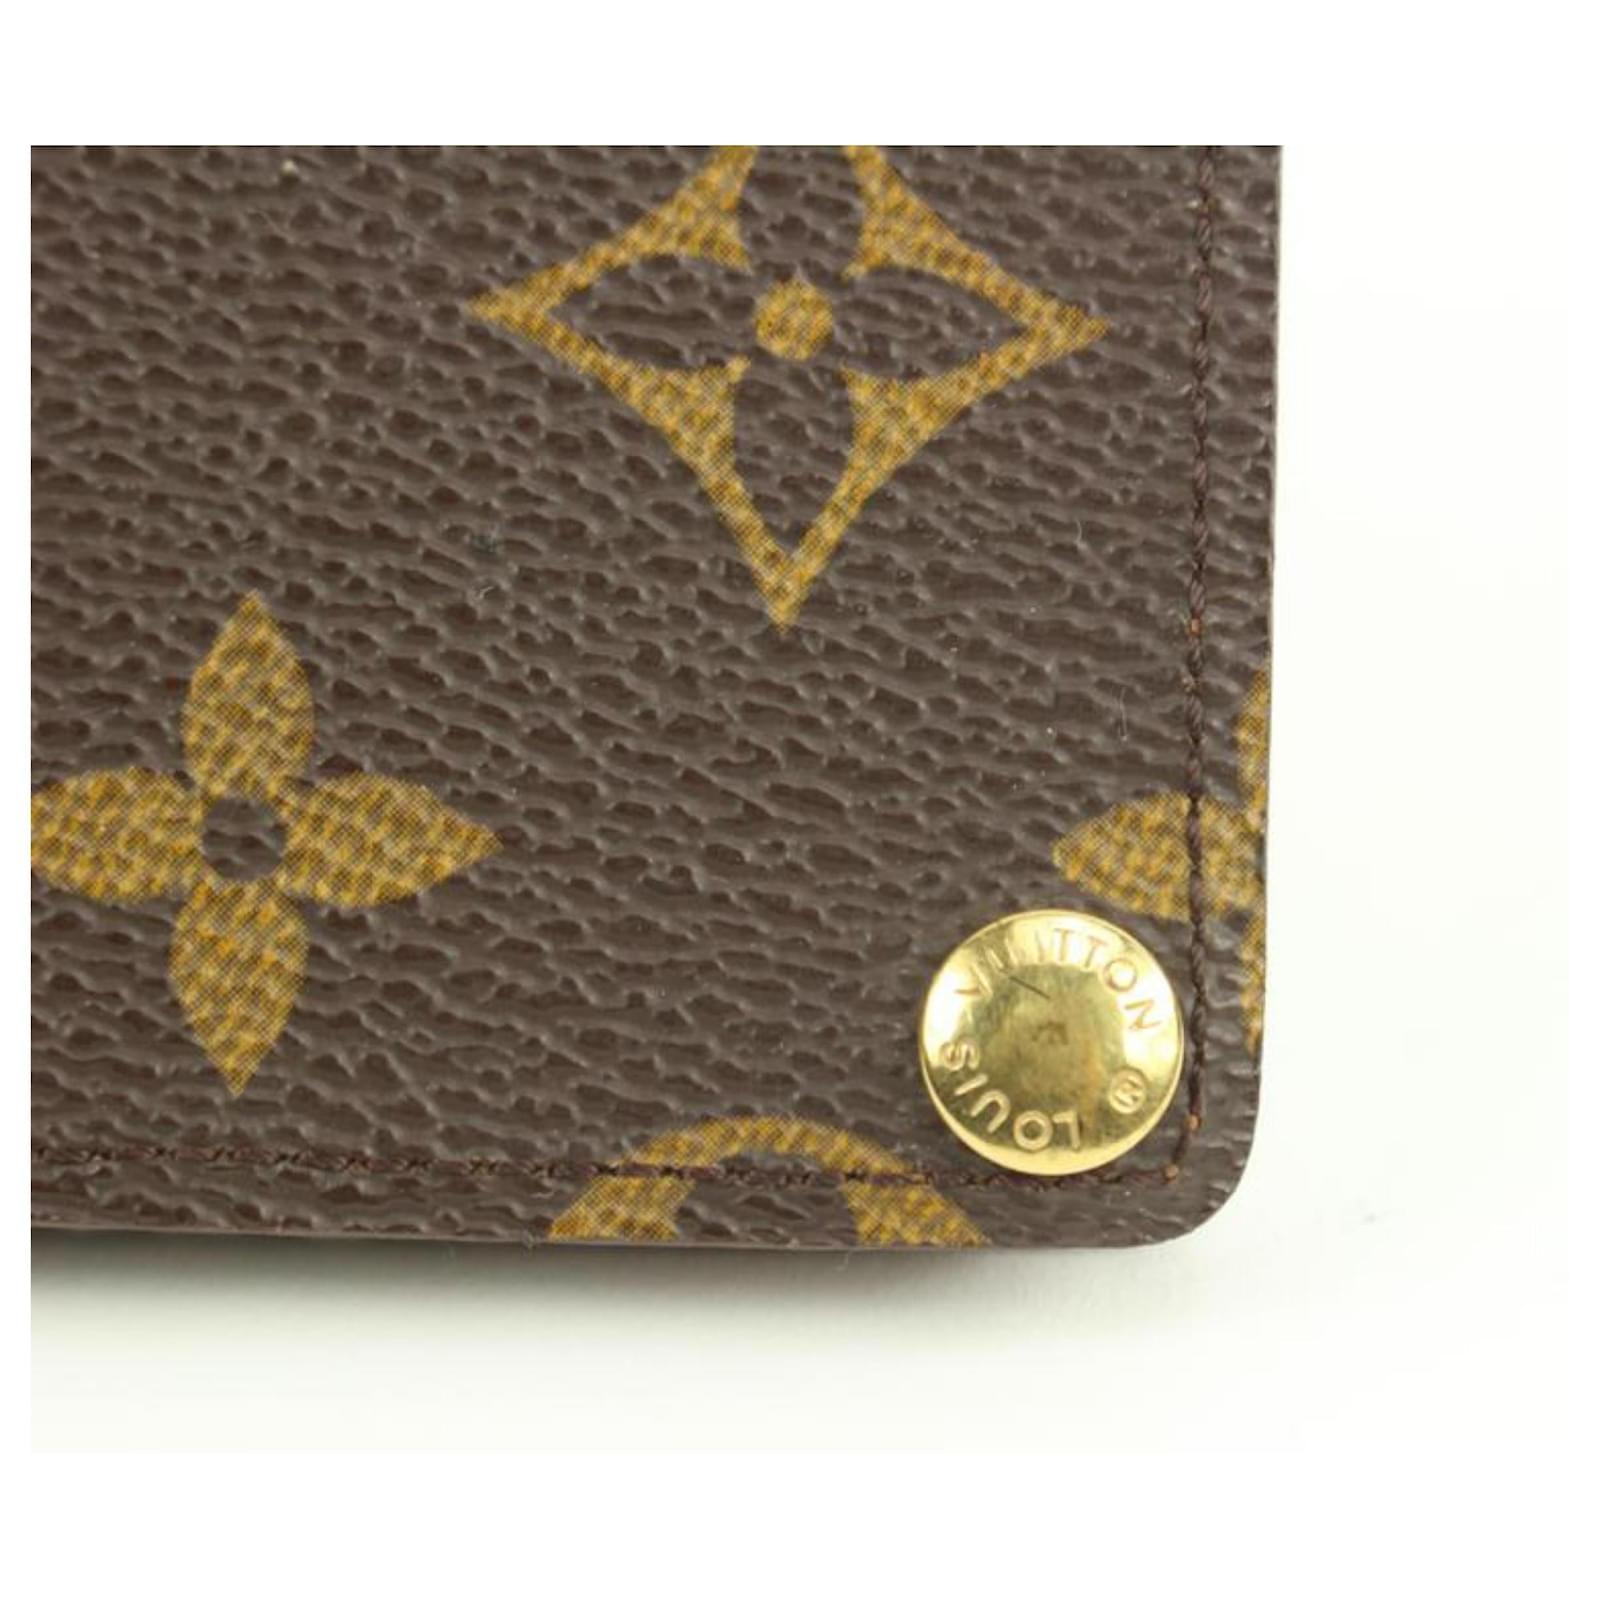 Louis Vuitton Monogram Porte Carte Credit Pression Card Case 54lk32s